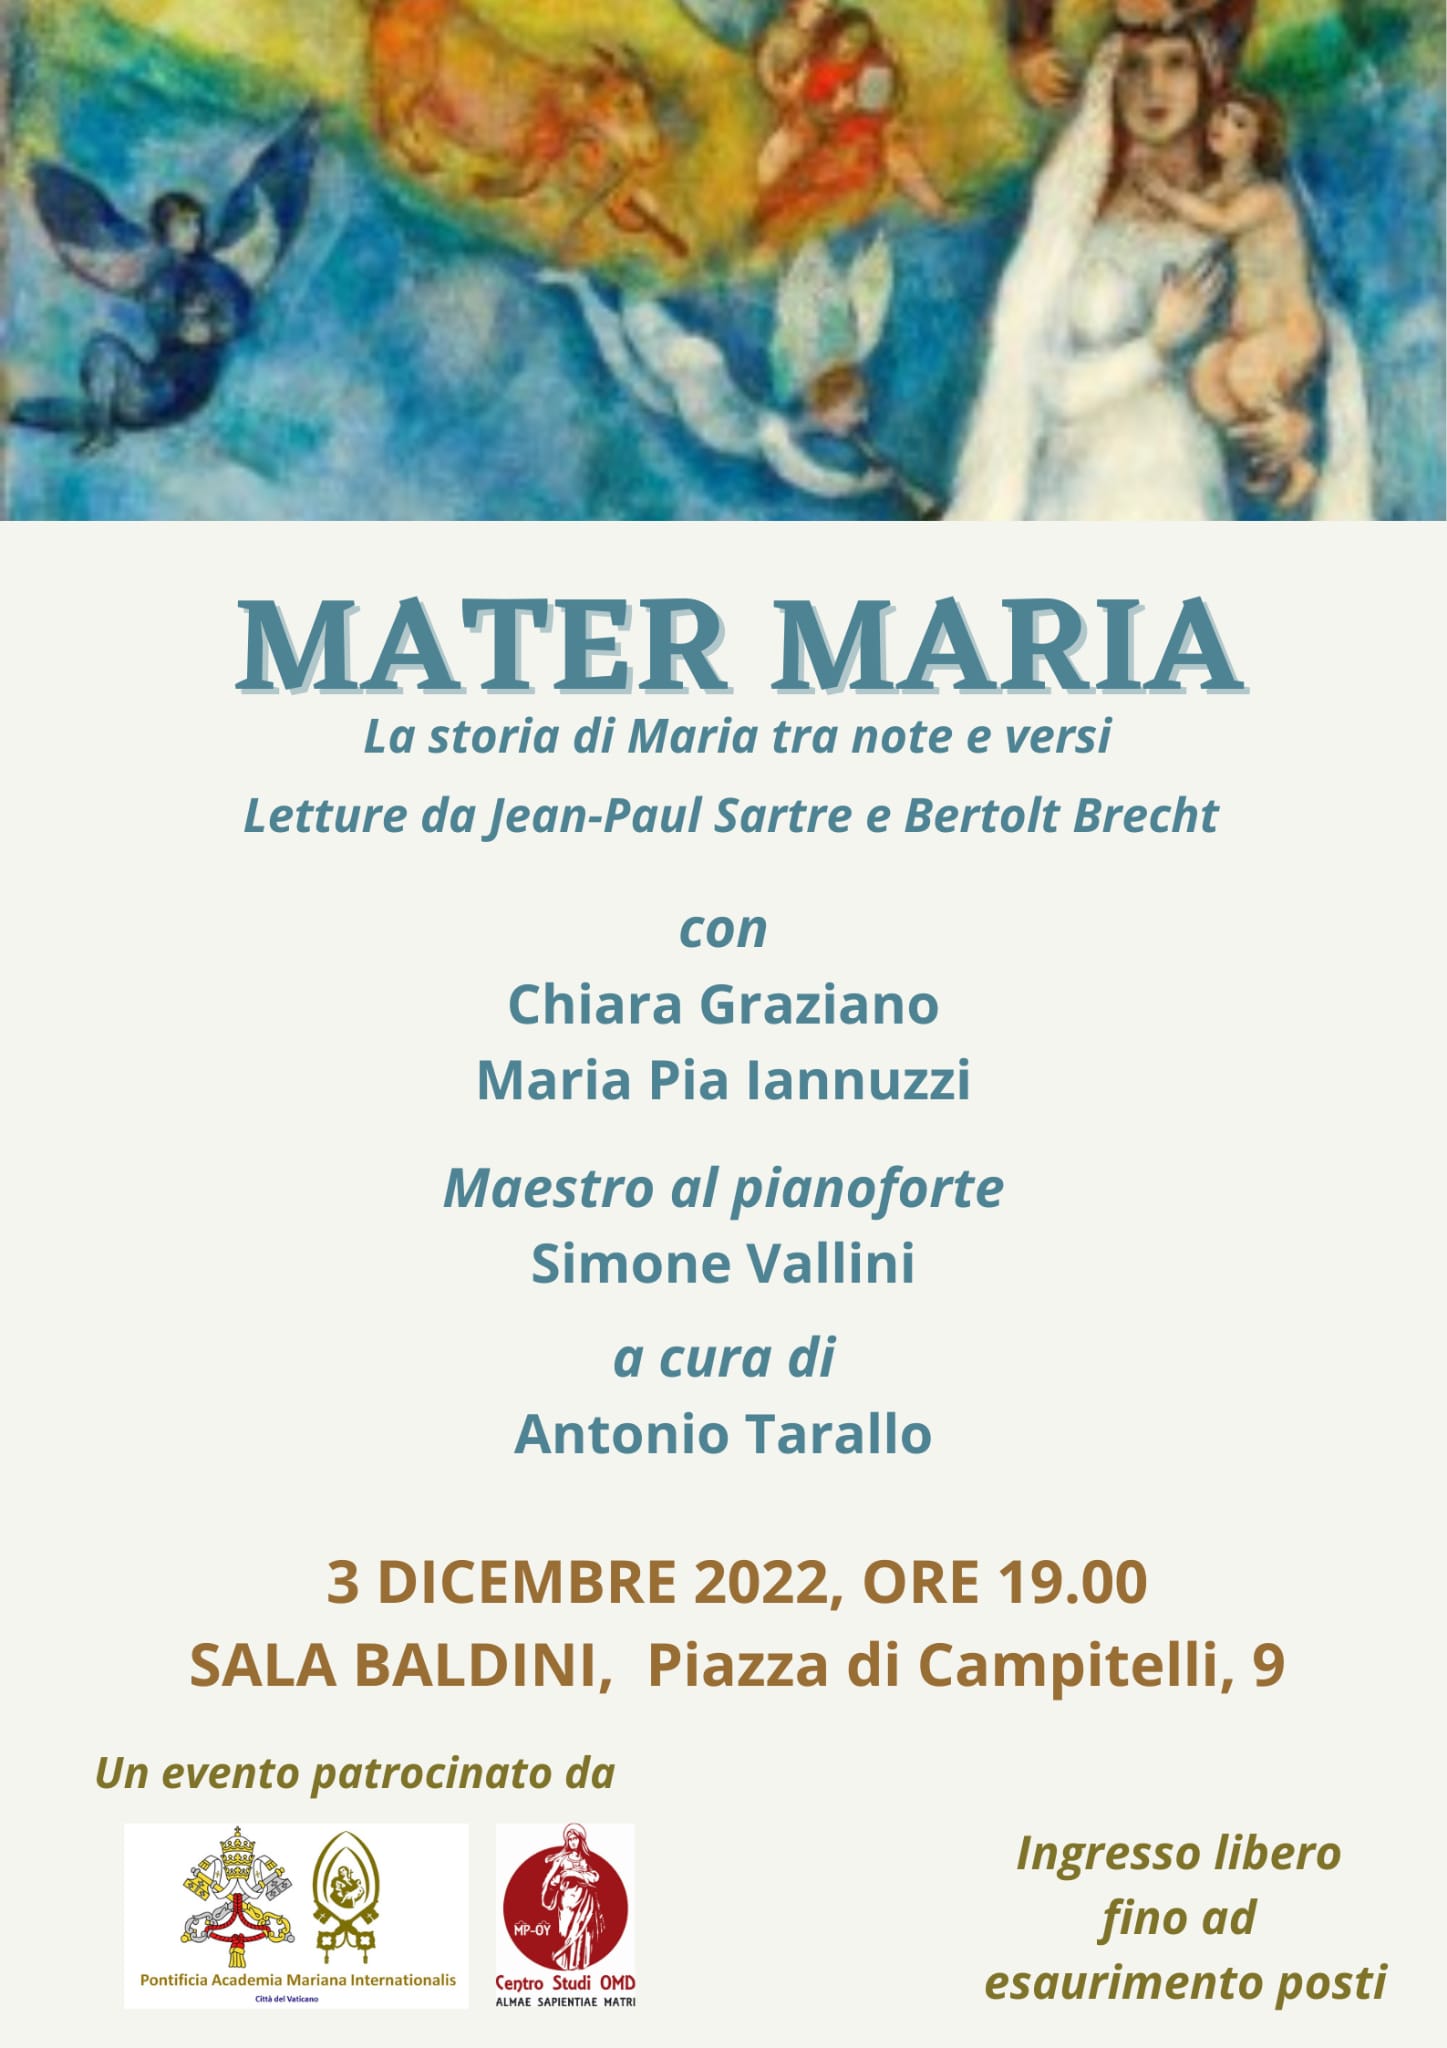 Mater Maria